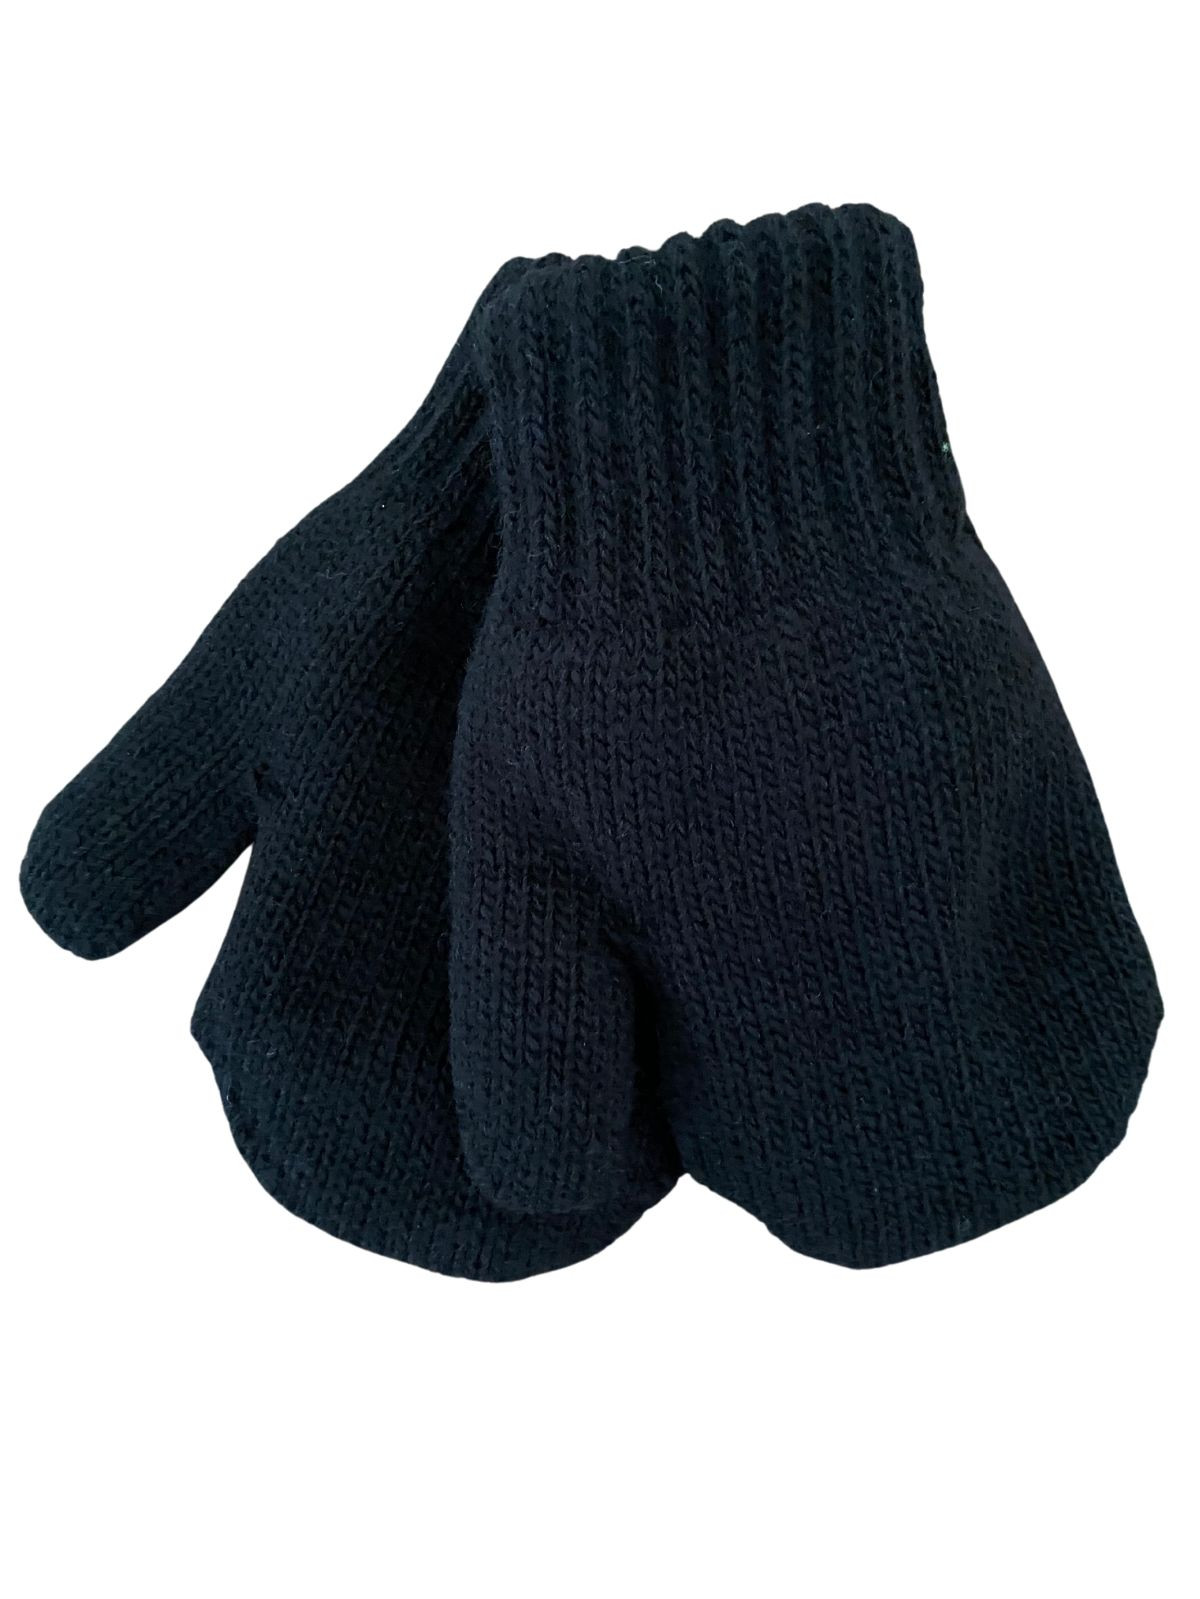 Mitaines tricotés pour enfant 0-24 mois, Mono_noir